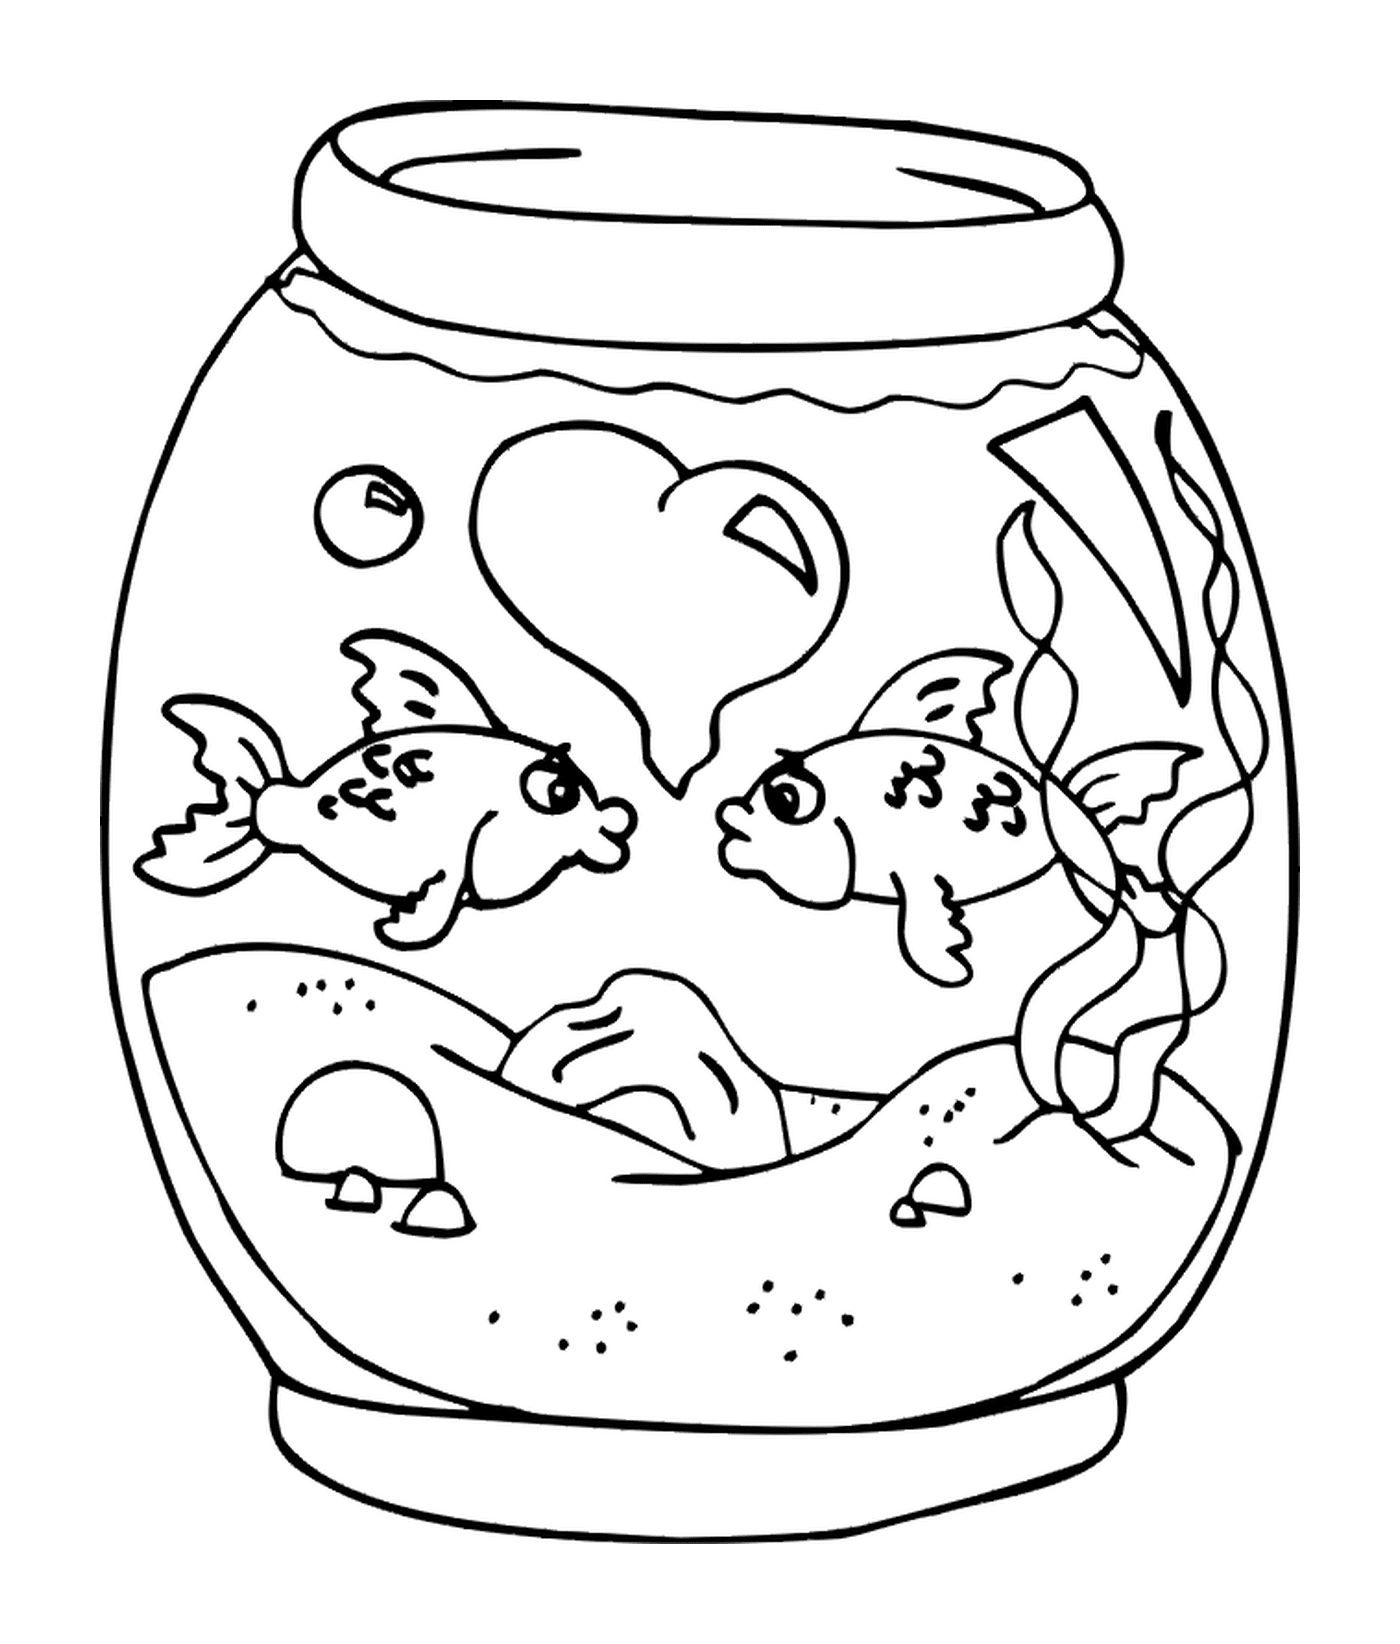  一个鱼罐 